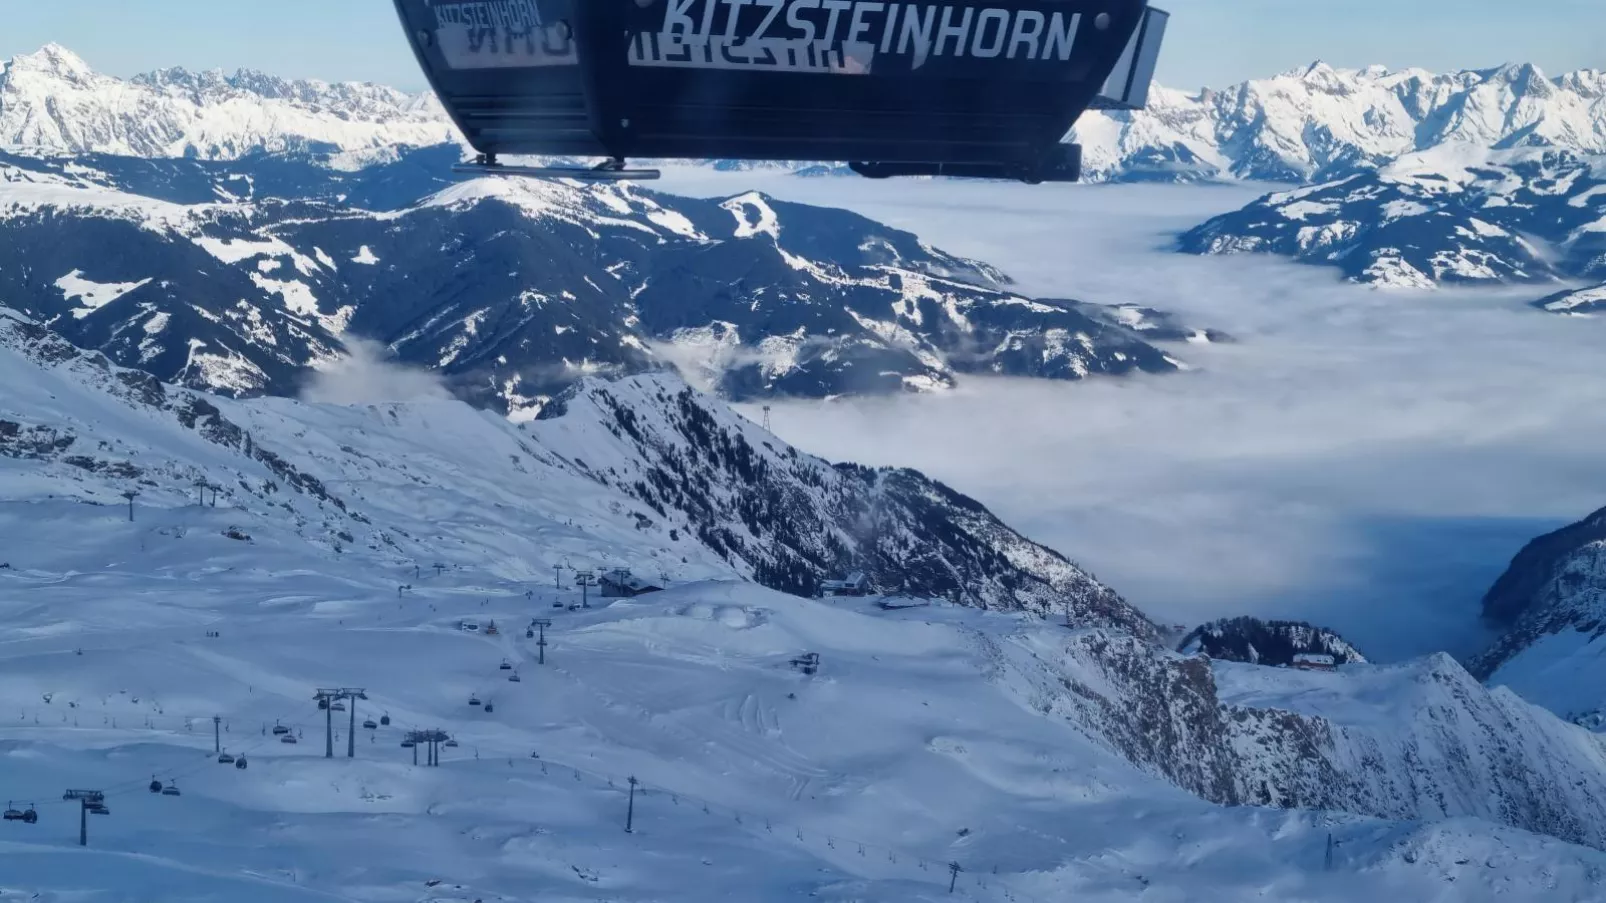 Kitzbüheler Alpen L-Gebied winter 5km